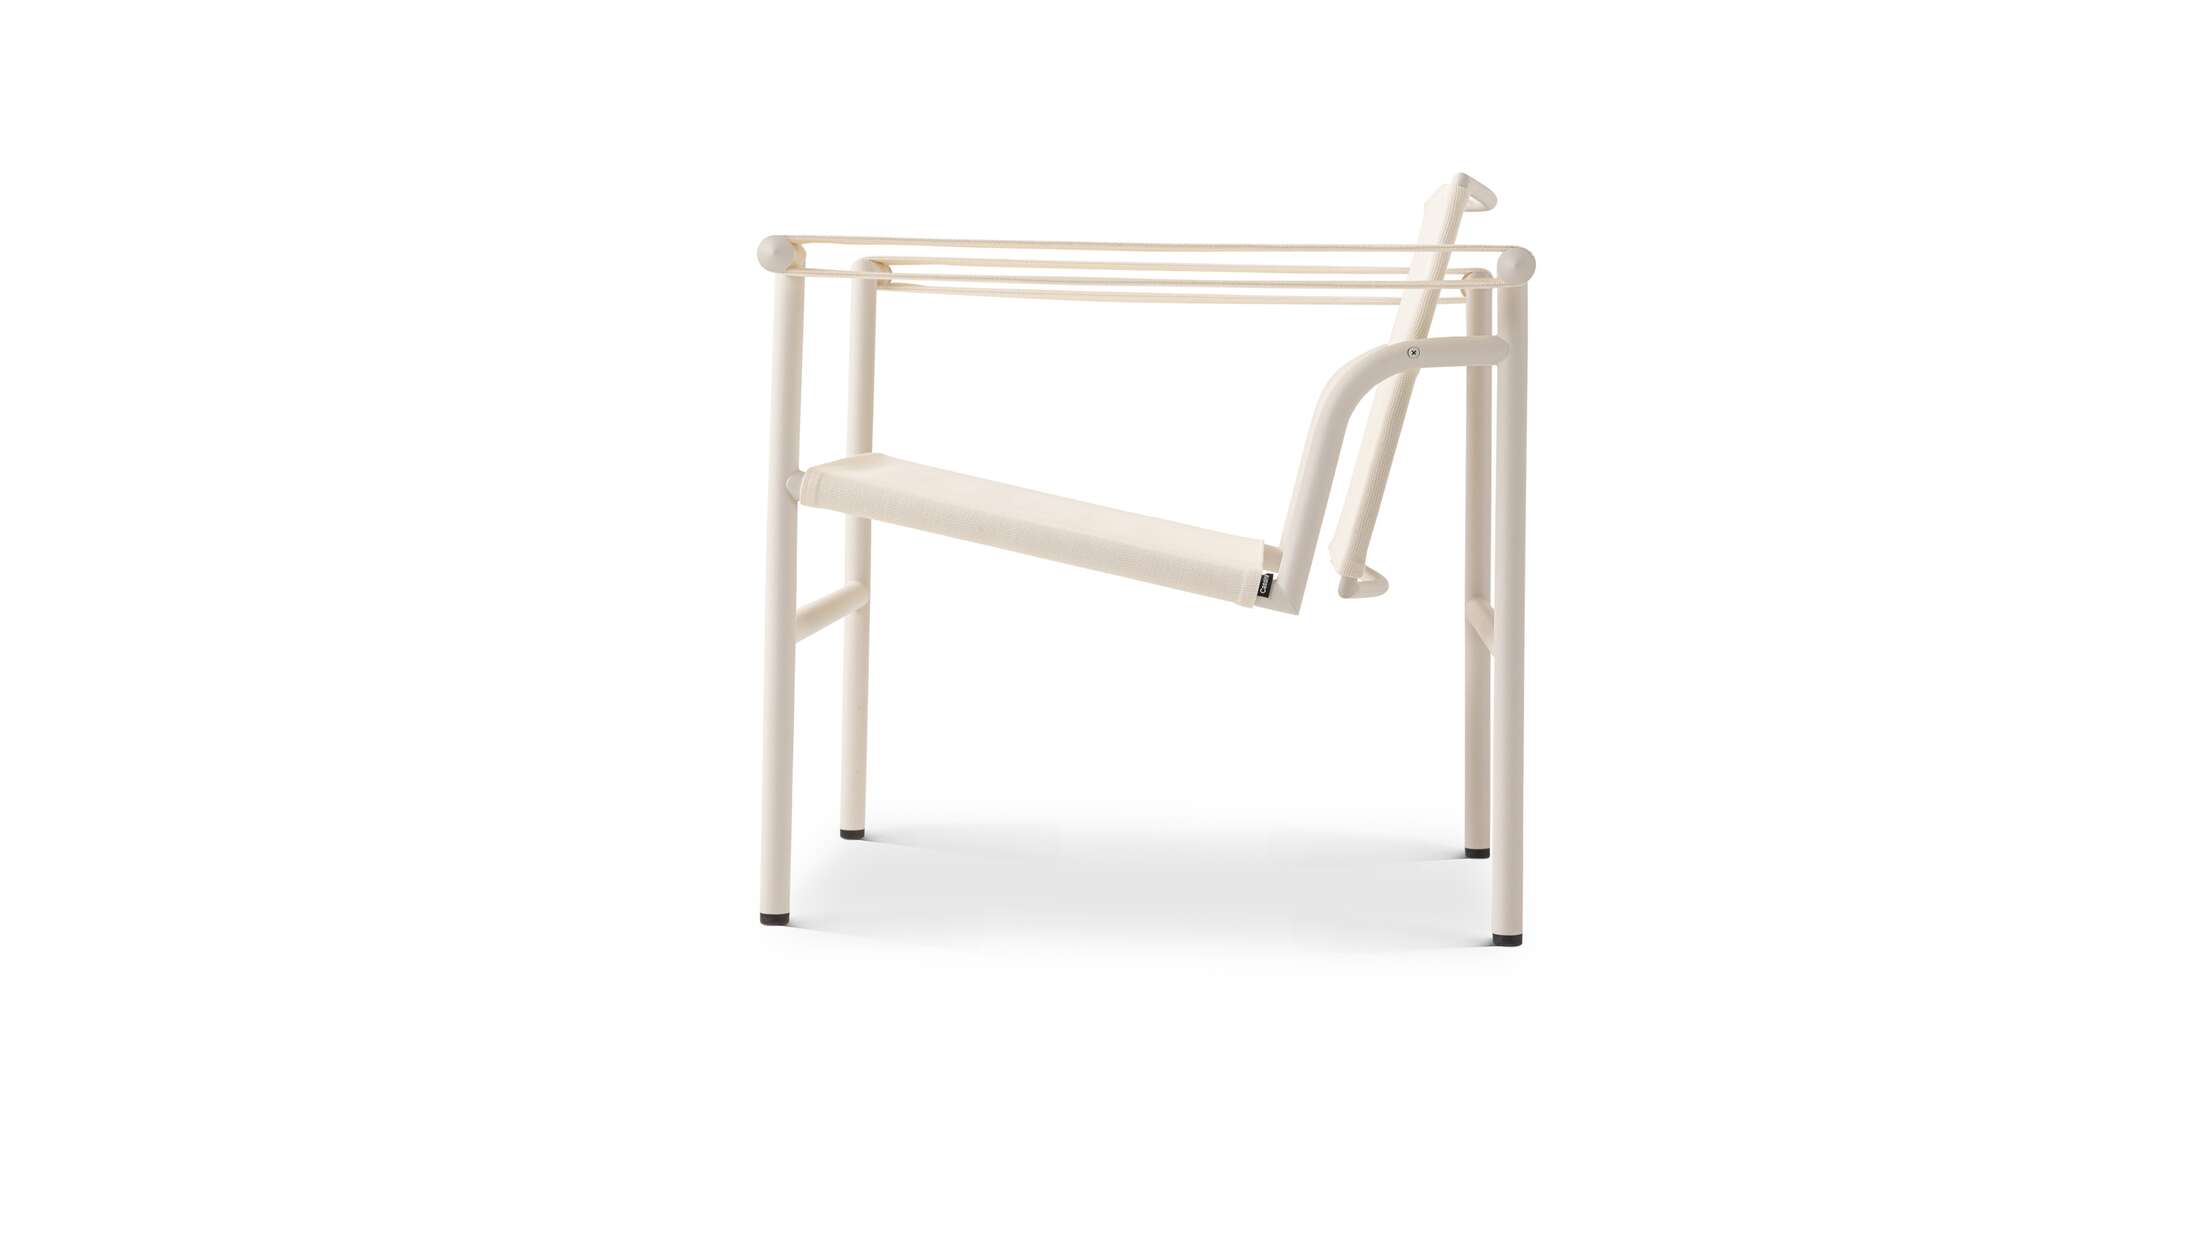 Der angegebene Preis gilt für das auf dem ersten Bild abgebildete Stück. Die Preise variieren je nach der gewählten Farbe und Ausführung. LC1 weißer Outdoor-Stuhl von Le Corbusier, Pierre Jeanneret, Charlotte Perriand aus dem Jahr 1928.